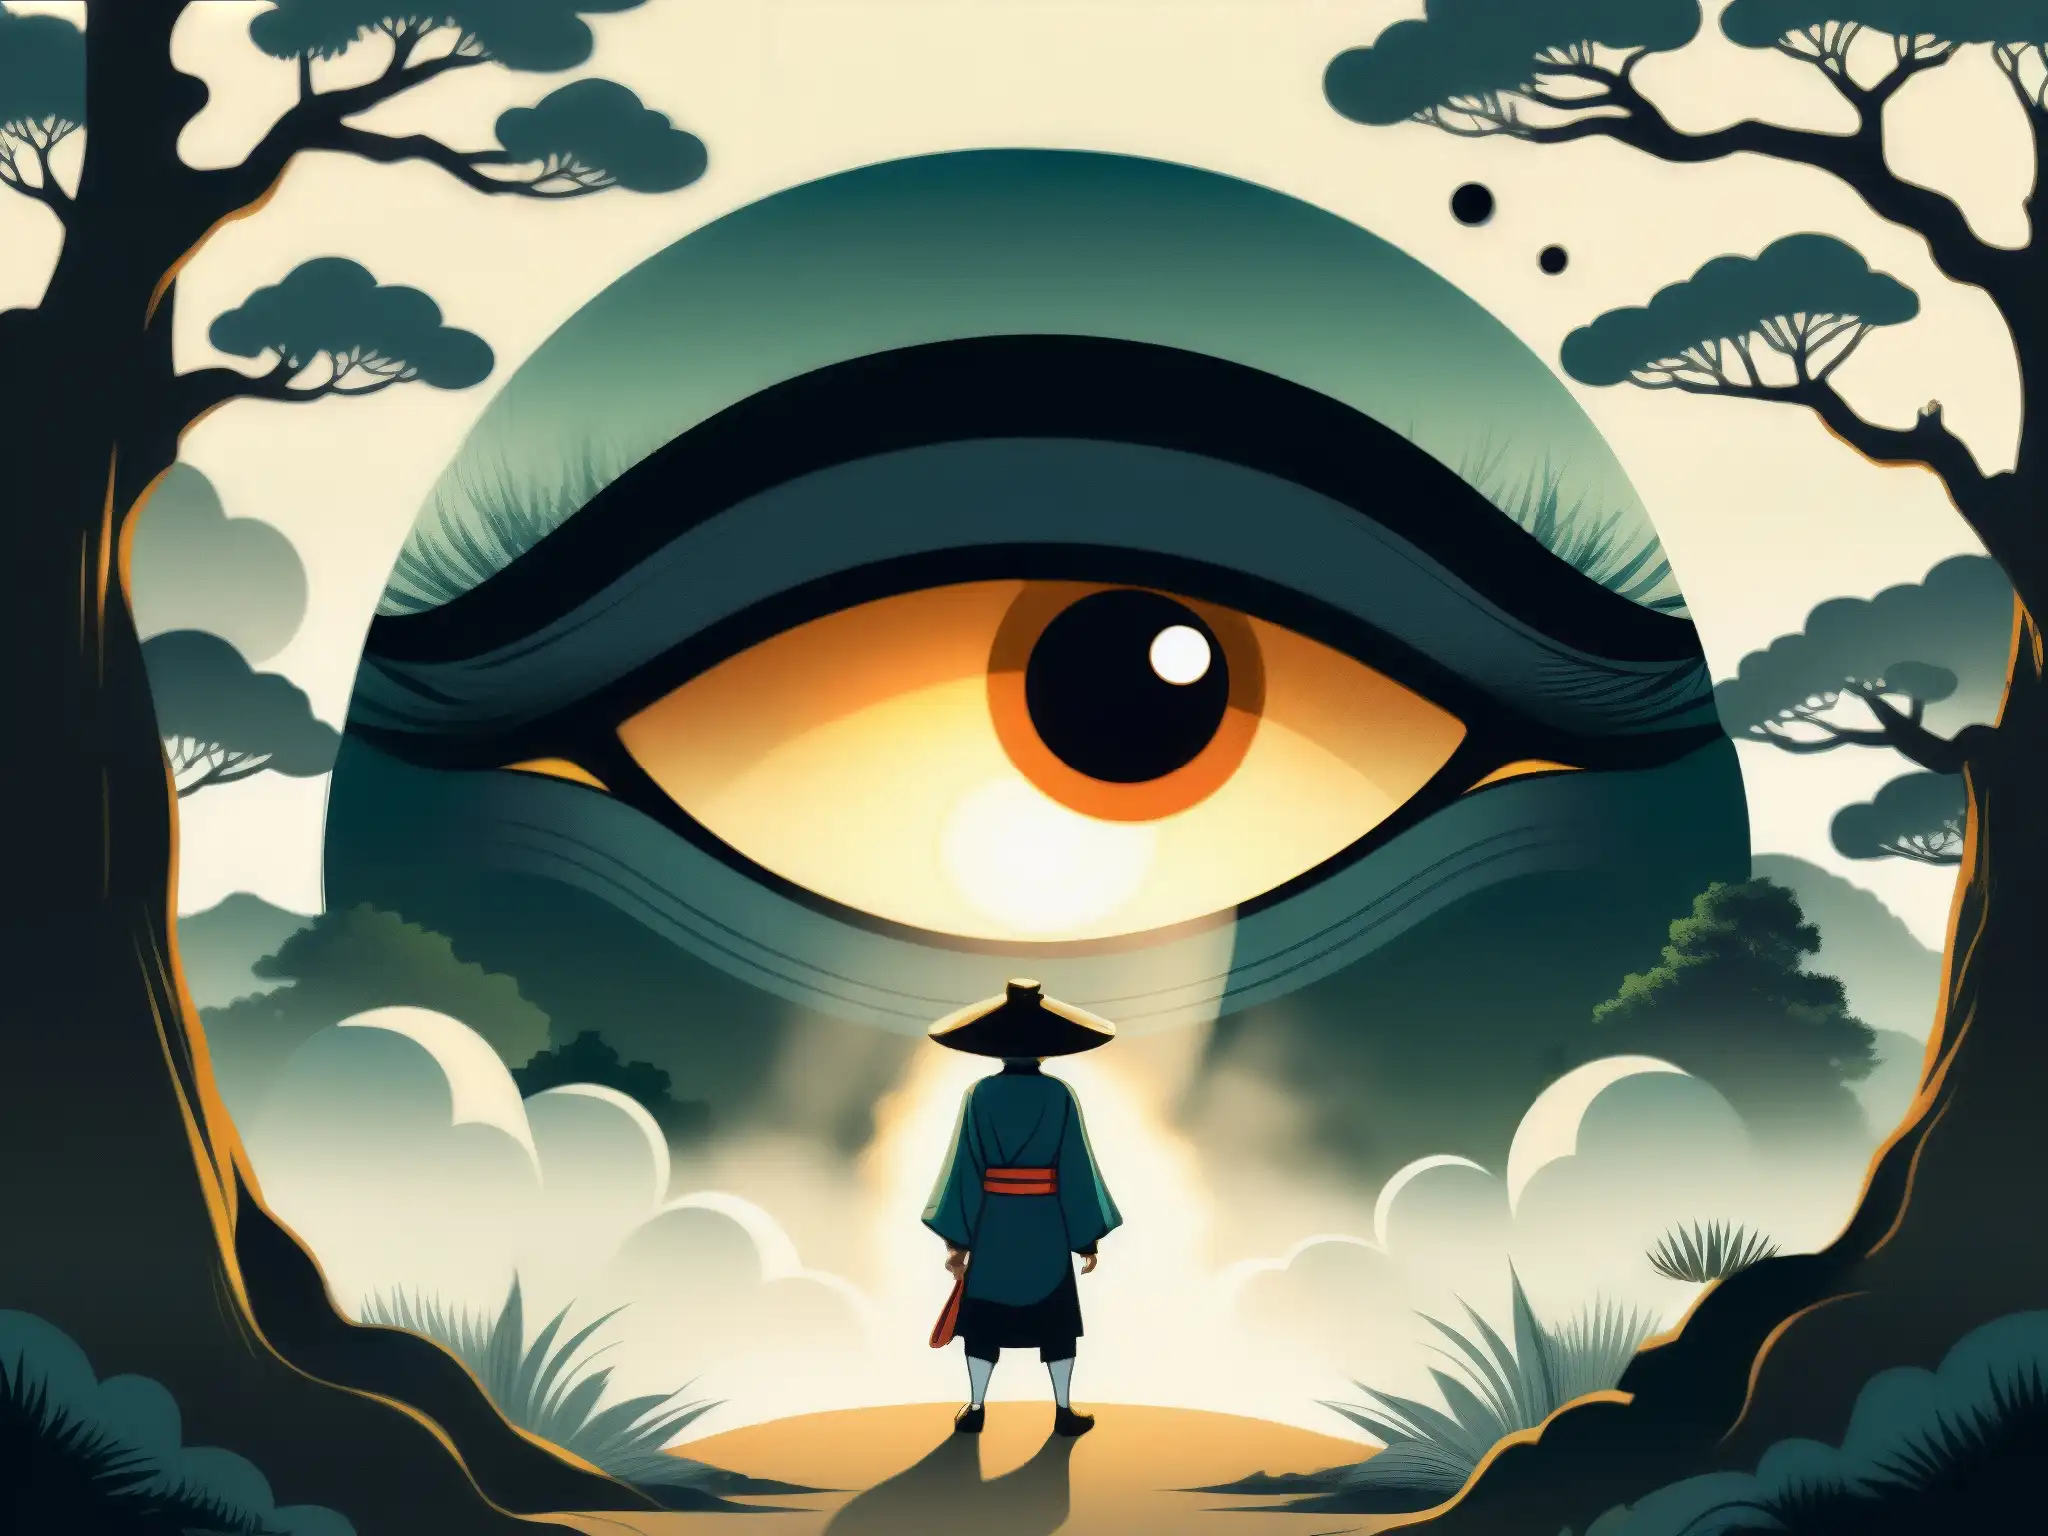 Ilustración detallada de un yokai japonés tradicional con ojo brillante gigante en lugar de trasero, en un bosque oscuro y espeluznante